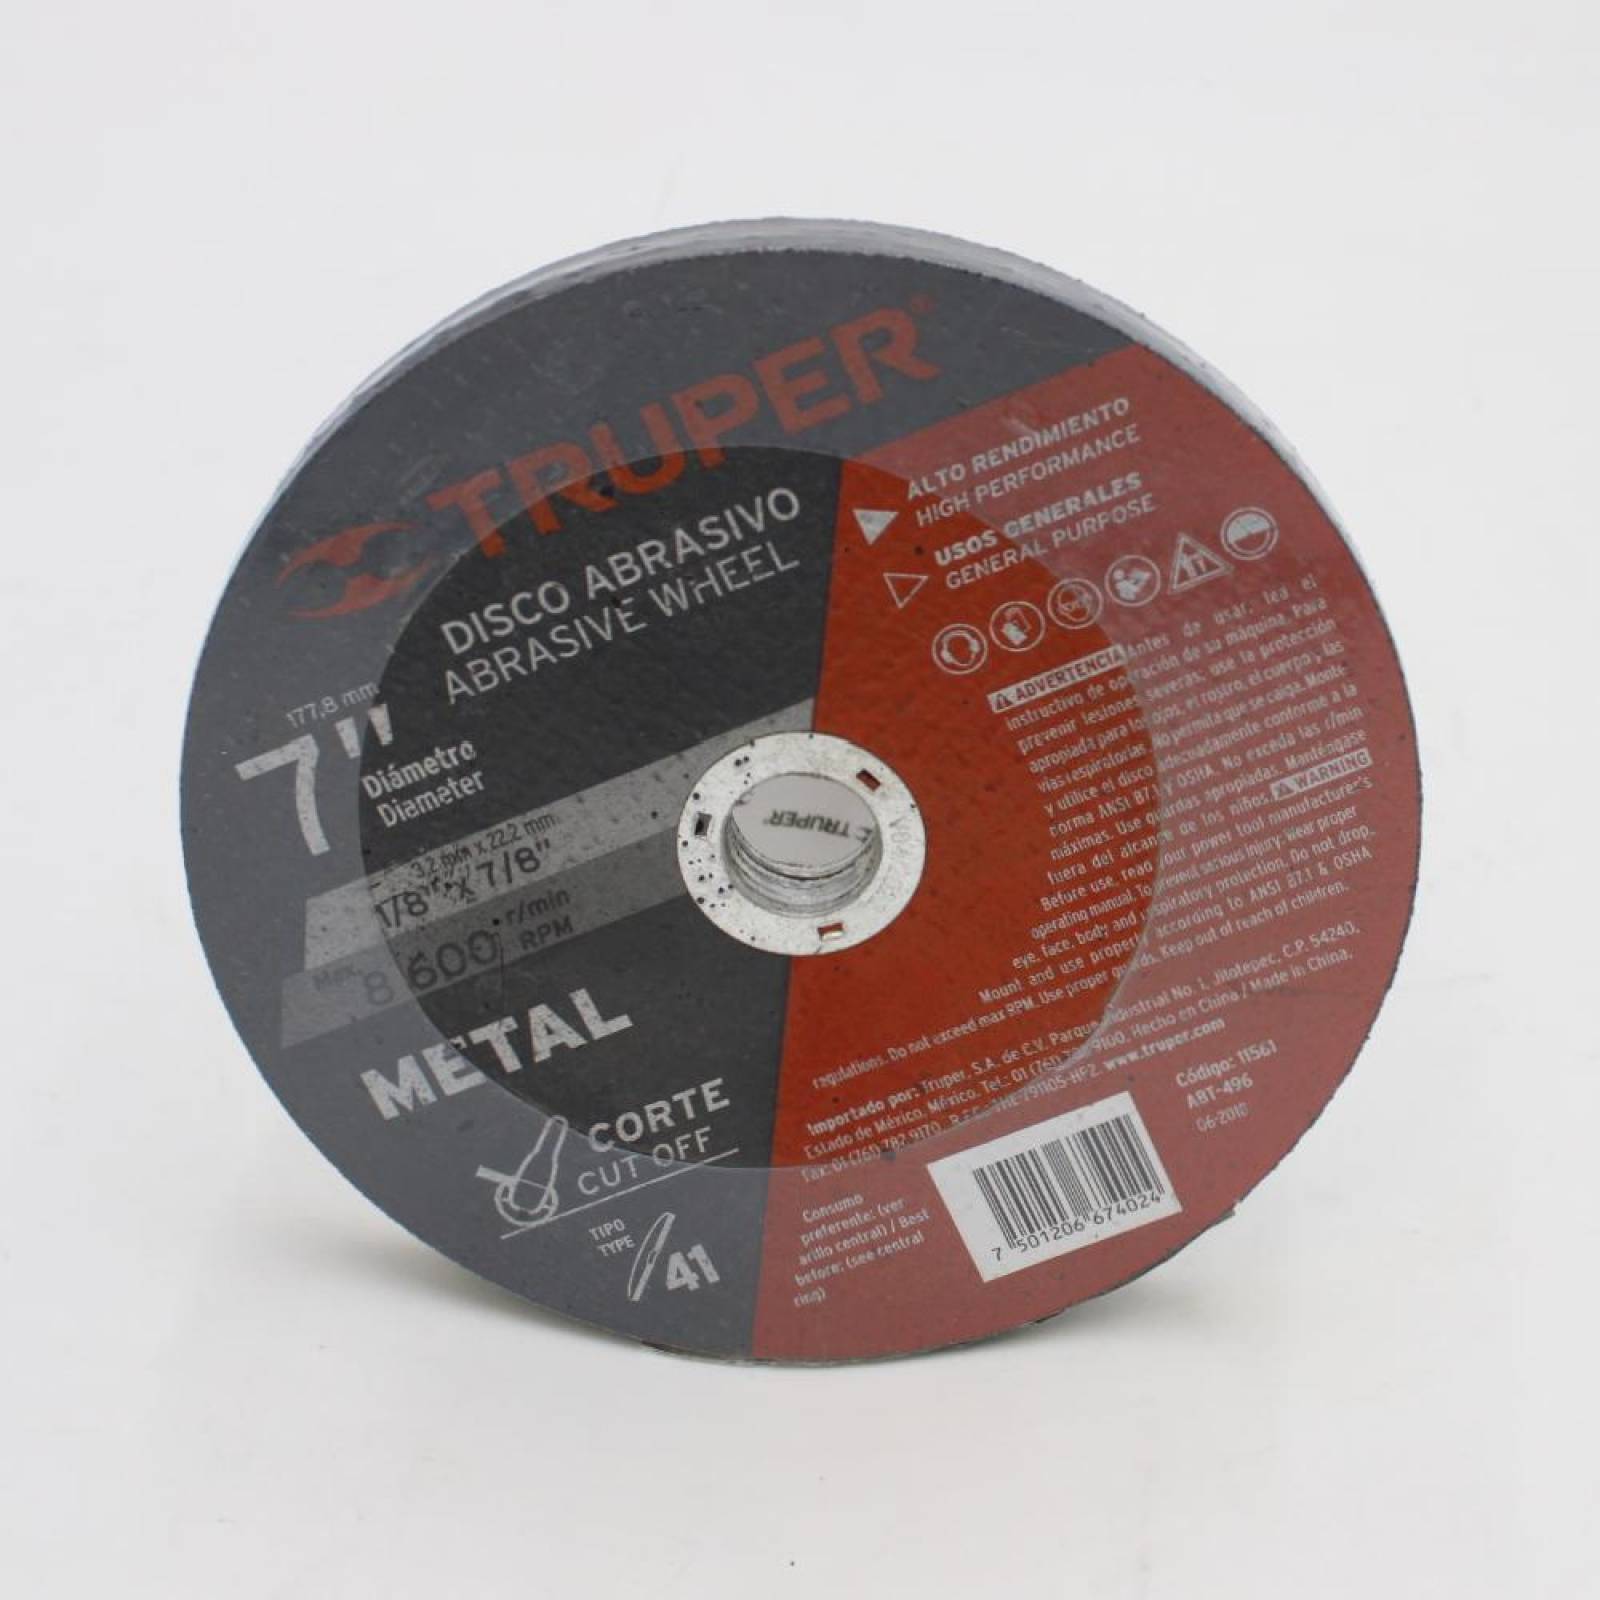 Disco para corte de metal, tipo 41, diámetro 7" 